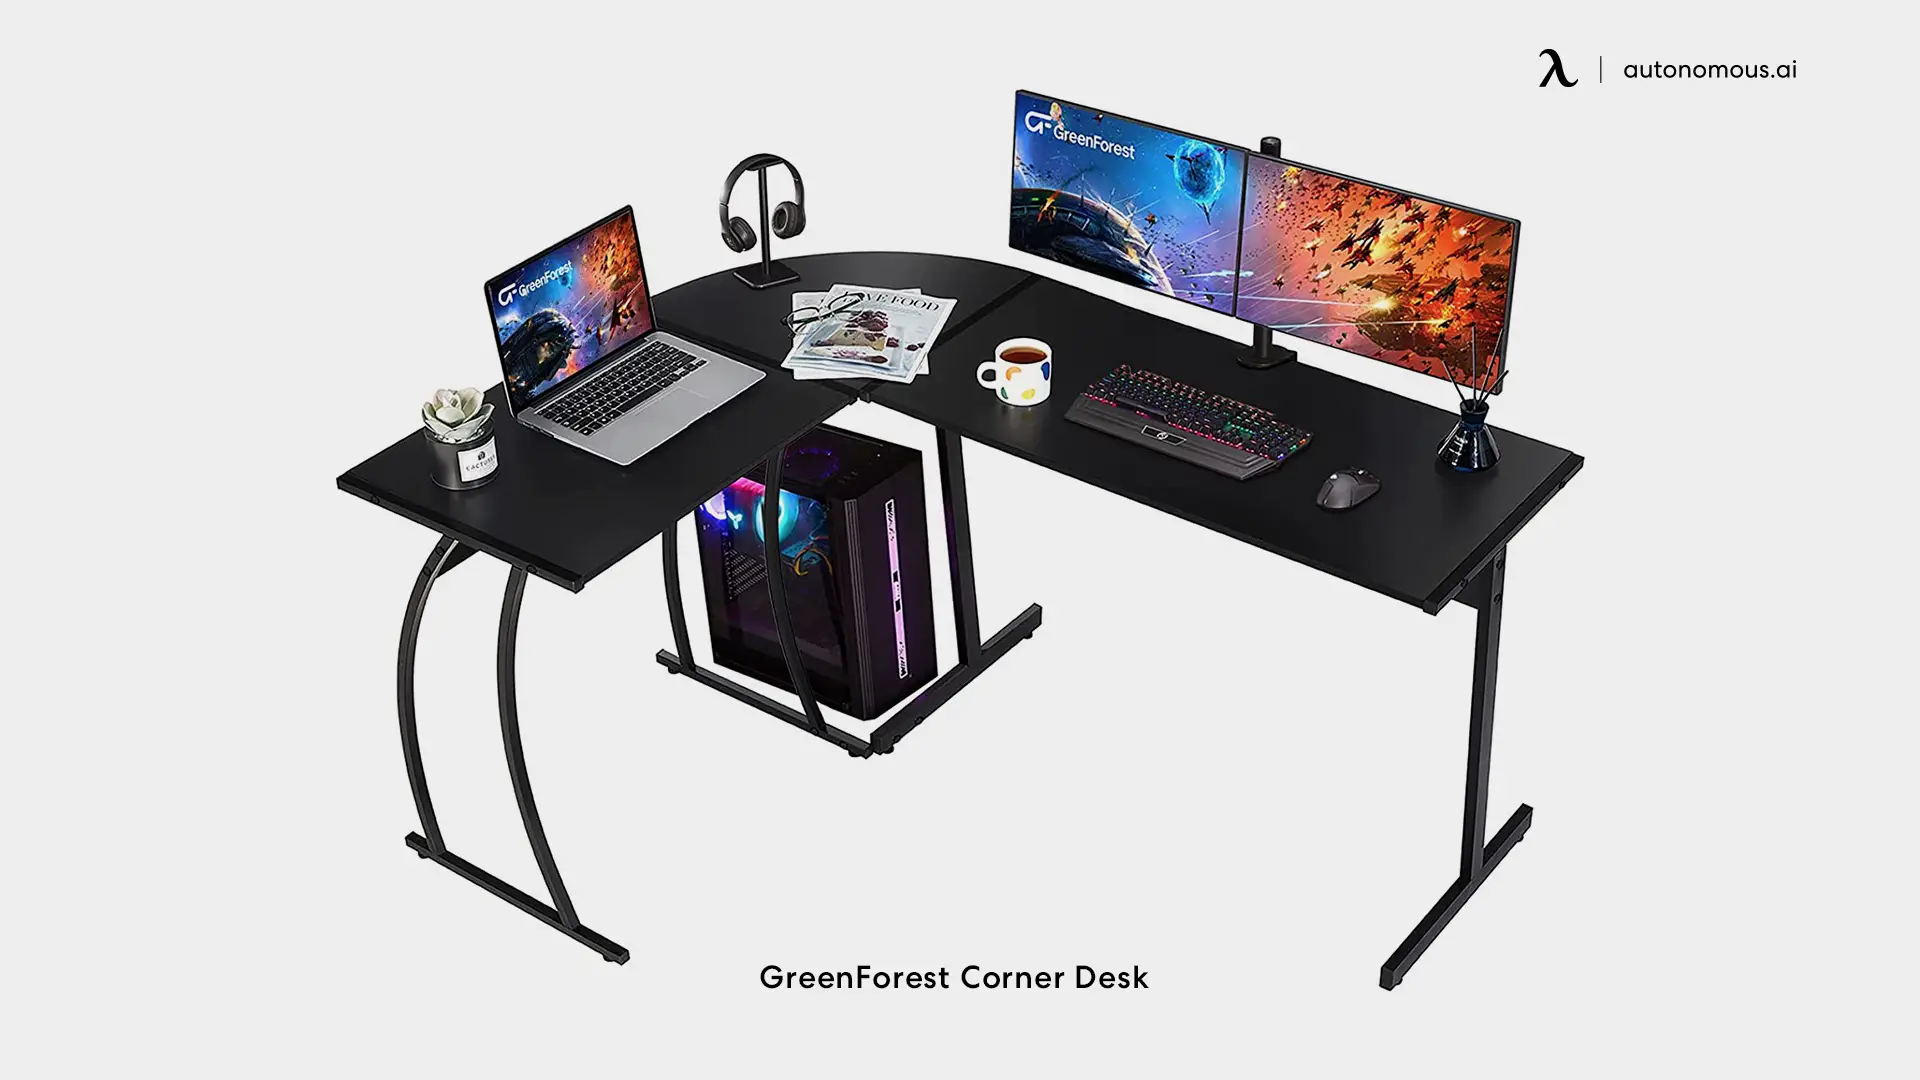 GreenForest Corner Desk - black L-shaped desk